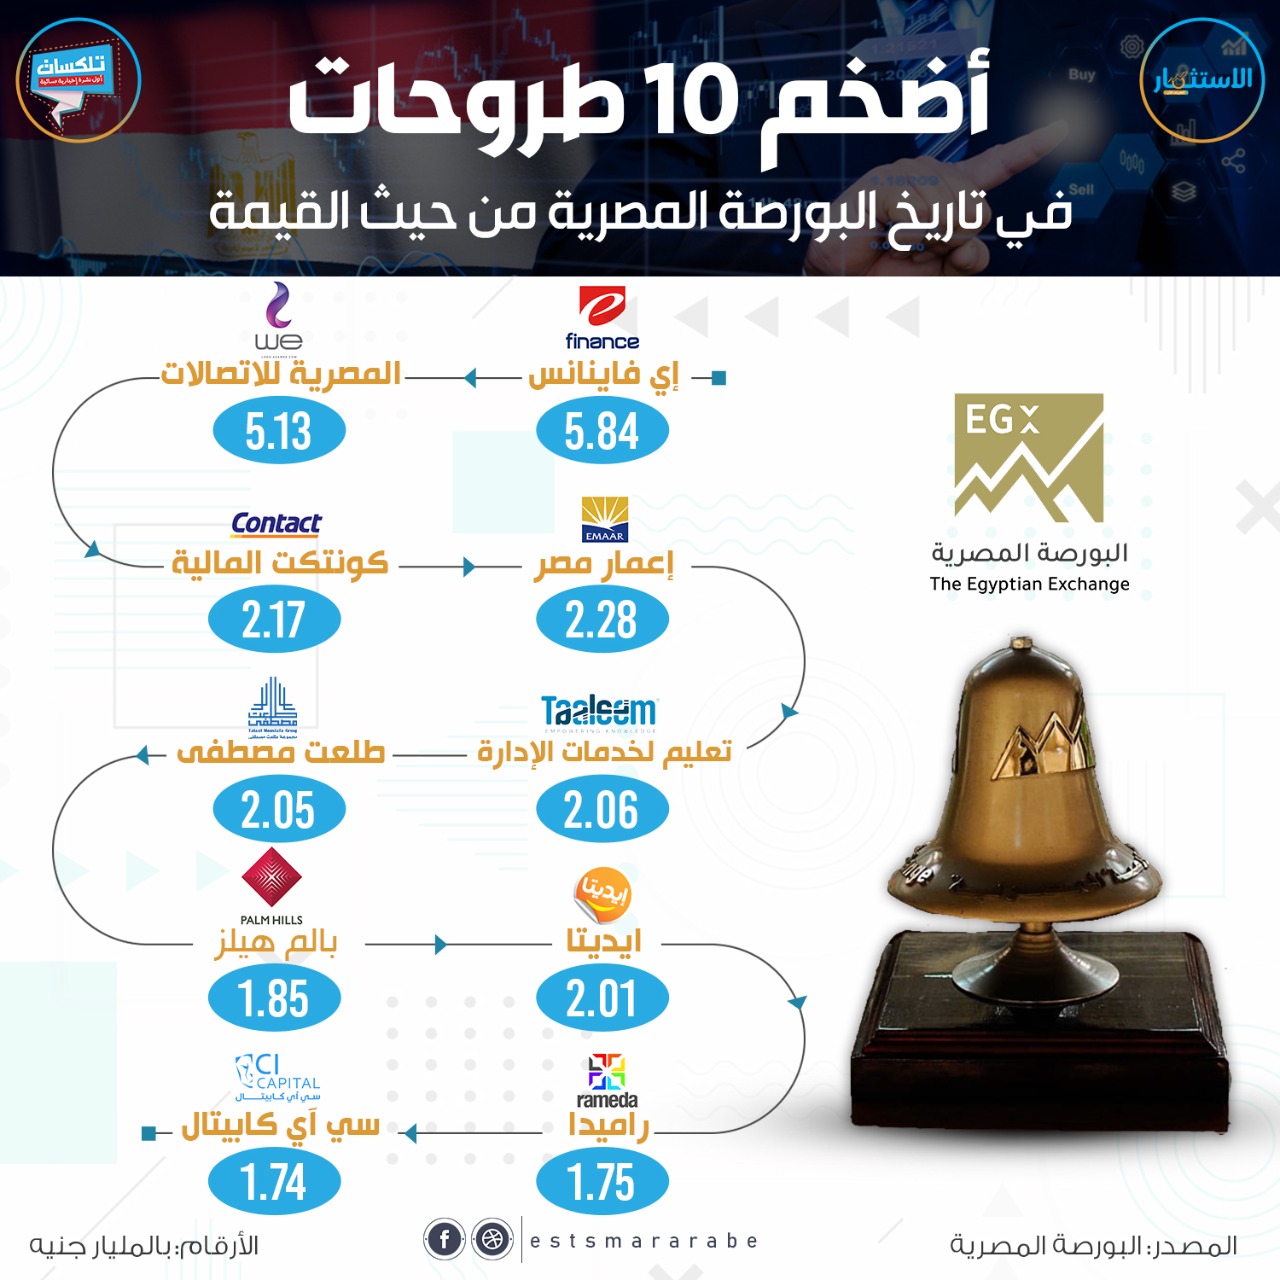 إنفوجرافيك|| تعرف على أكبر 10 طروحات من حيث القيمة فى البورصة المصرية